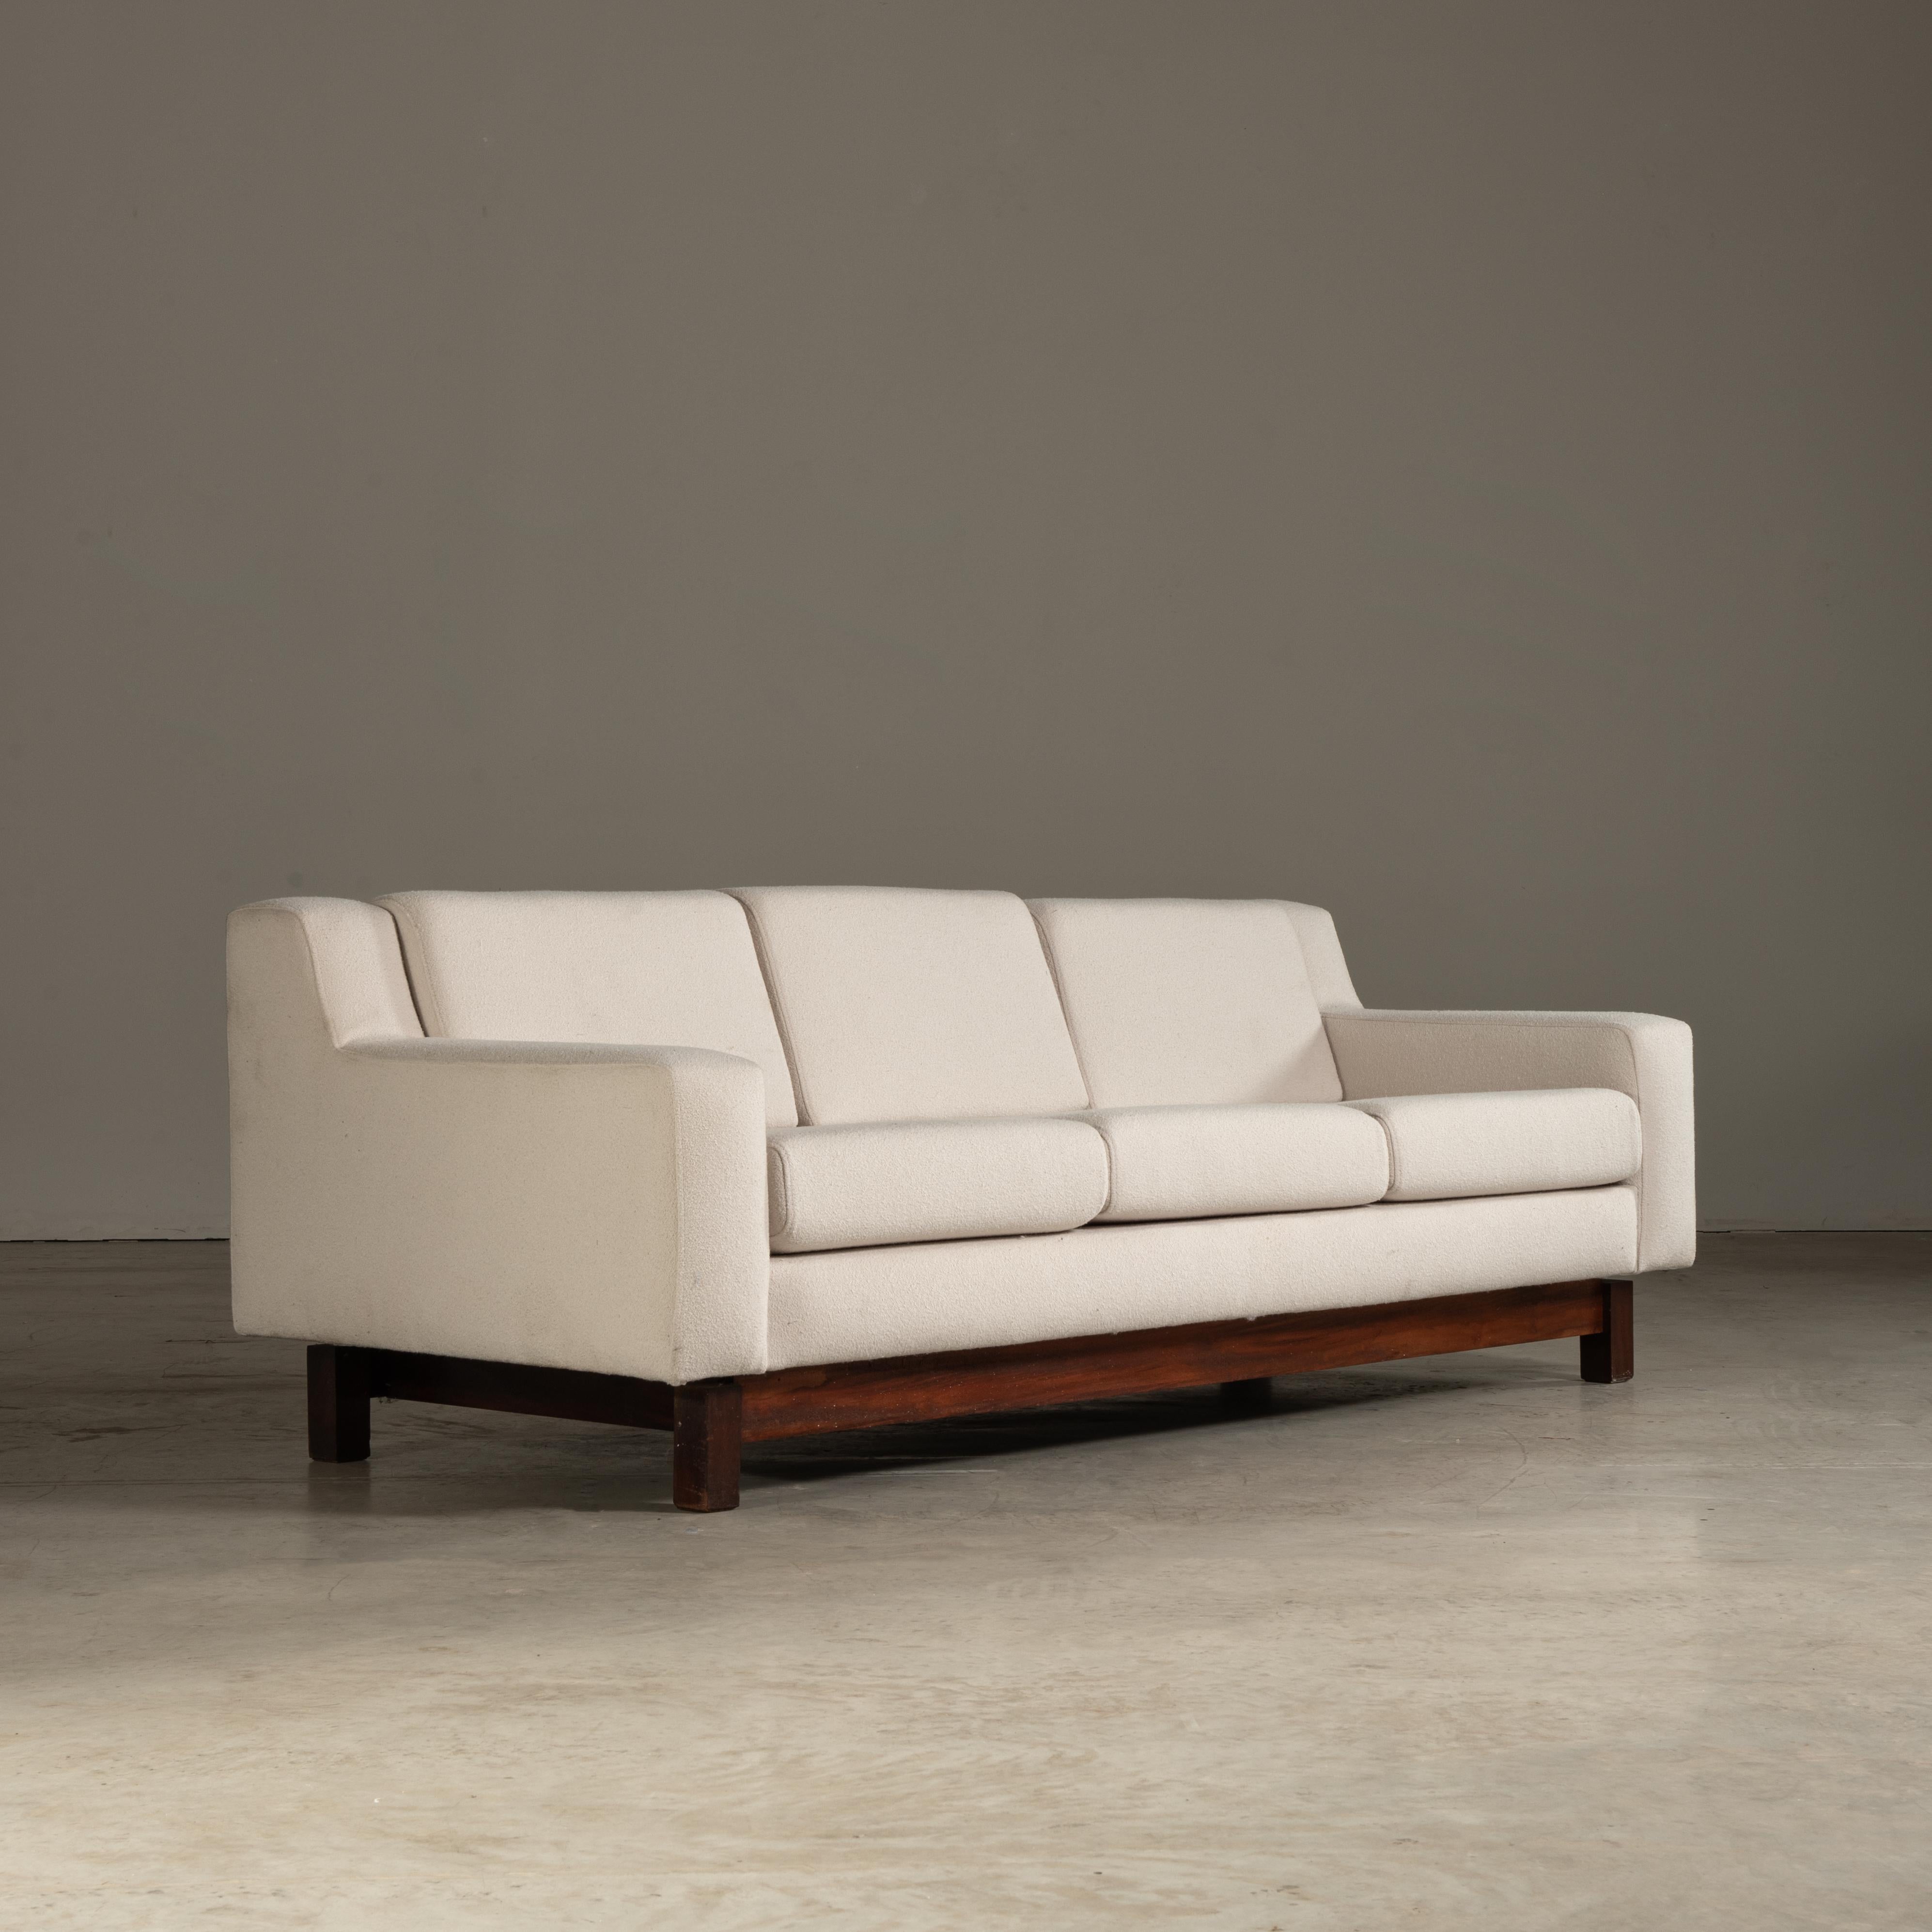 Dieses von Sérgio Rodrigues entworfene Sofa ist ein exquisites Möbelstück der Moderne aus der Mitte des Jahrhunderts, das den unverwechselbaren Charakter des brasilianischen Designs verkörpert. Das aus robustem Tropenholz gefertigte Möbelstück ist